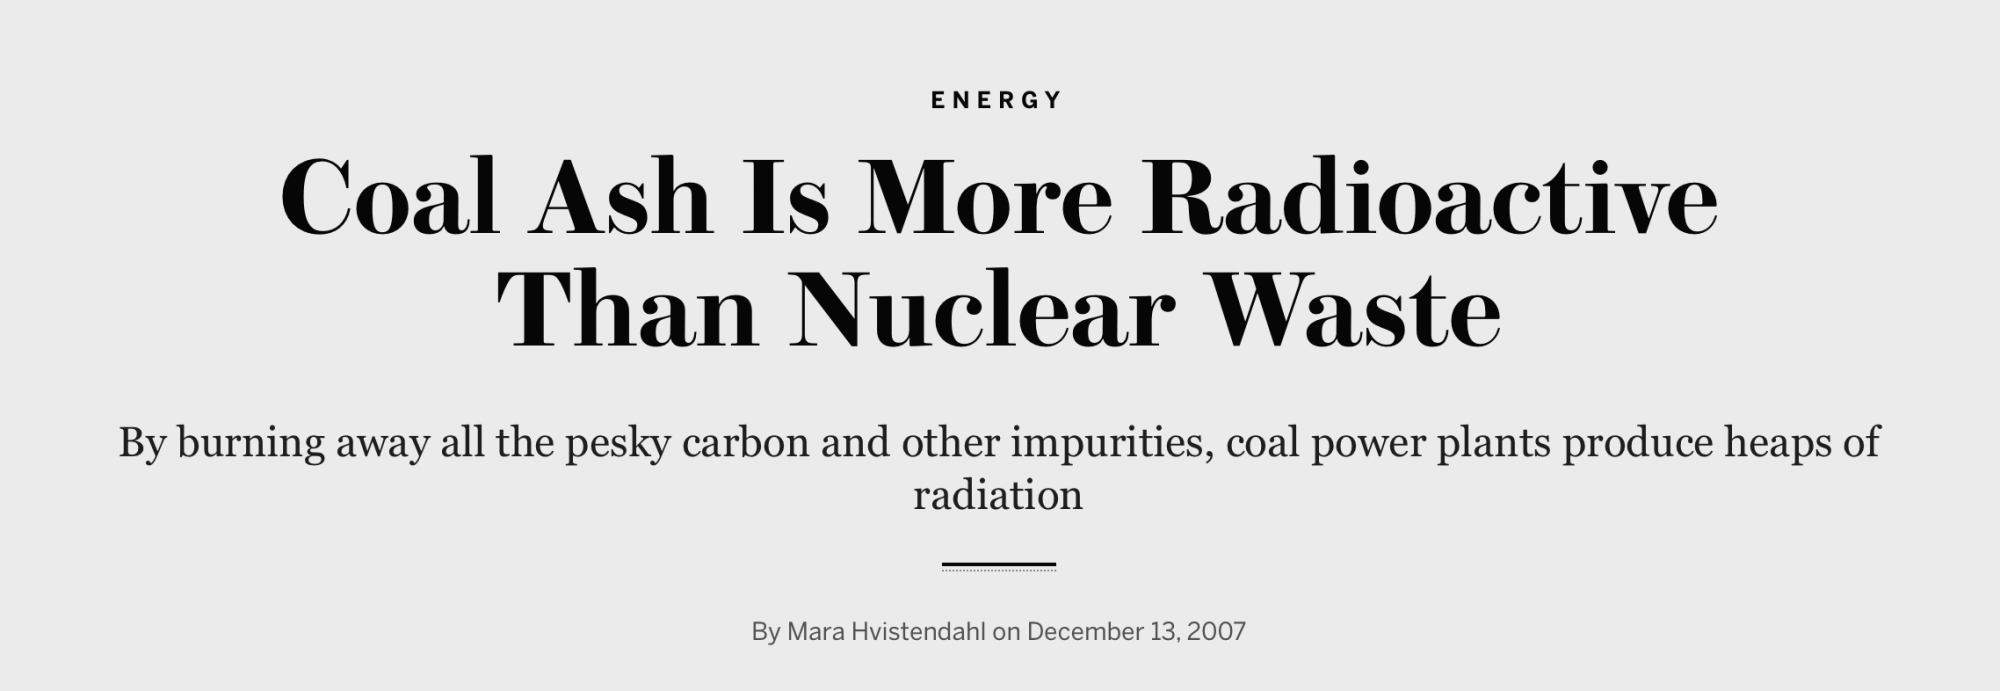 煤灰比核废料的辐射性还强